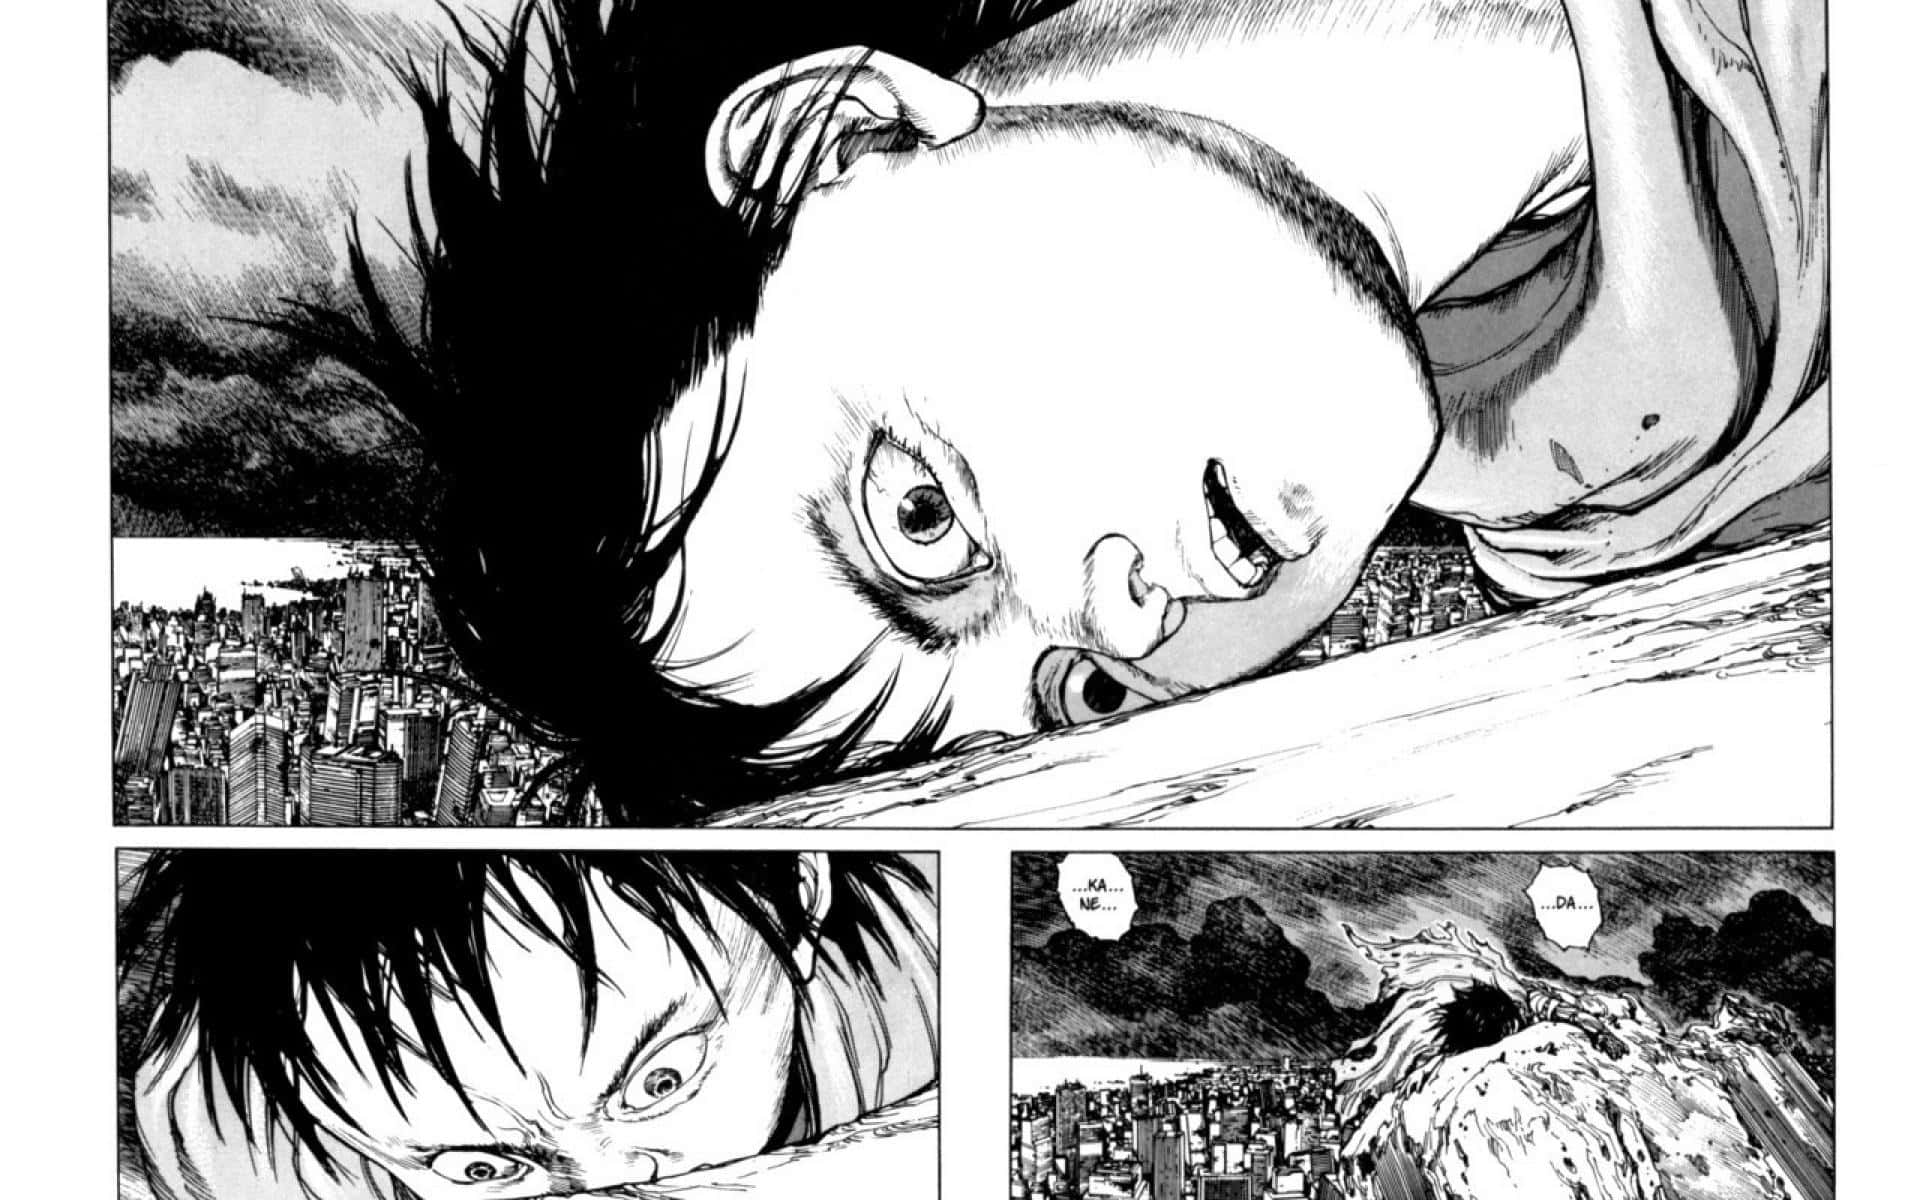 Akira Background Of Manga Panel